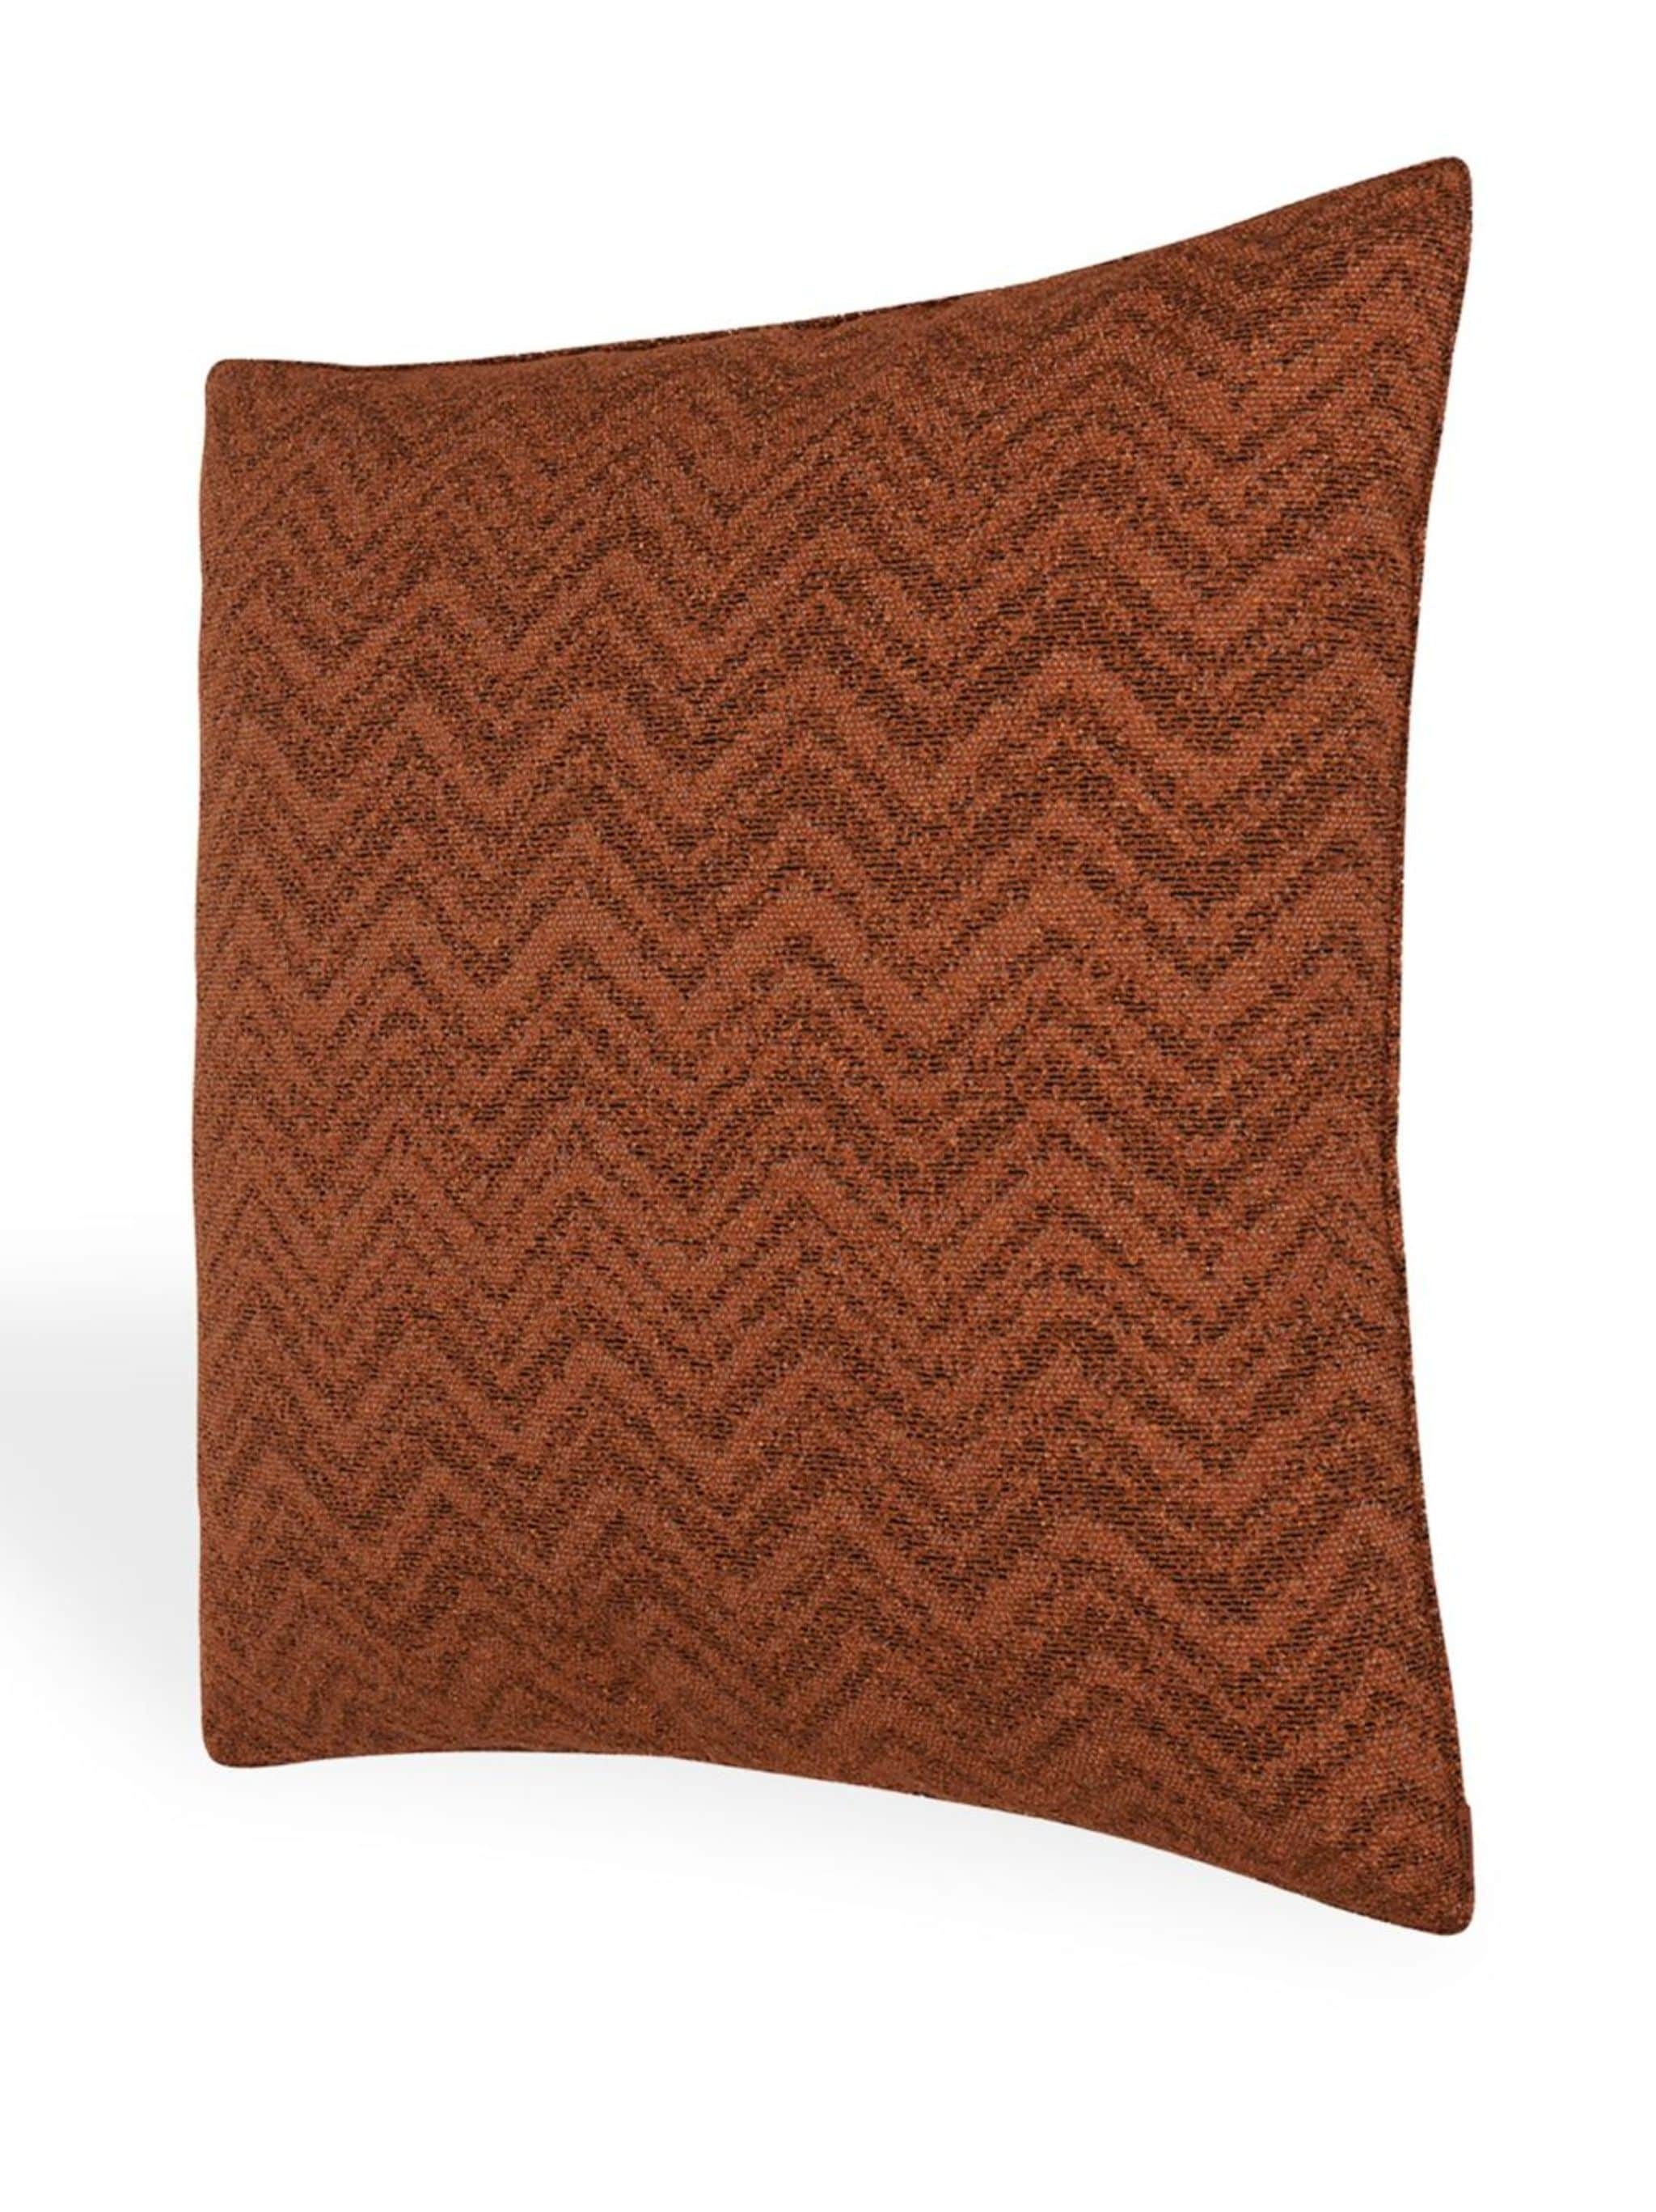 large Columbia zigzag-woven cushion - 3